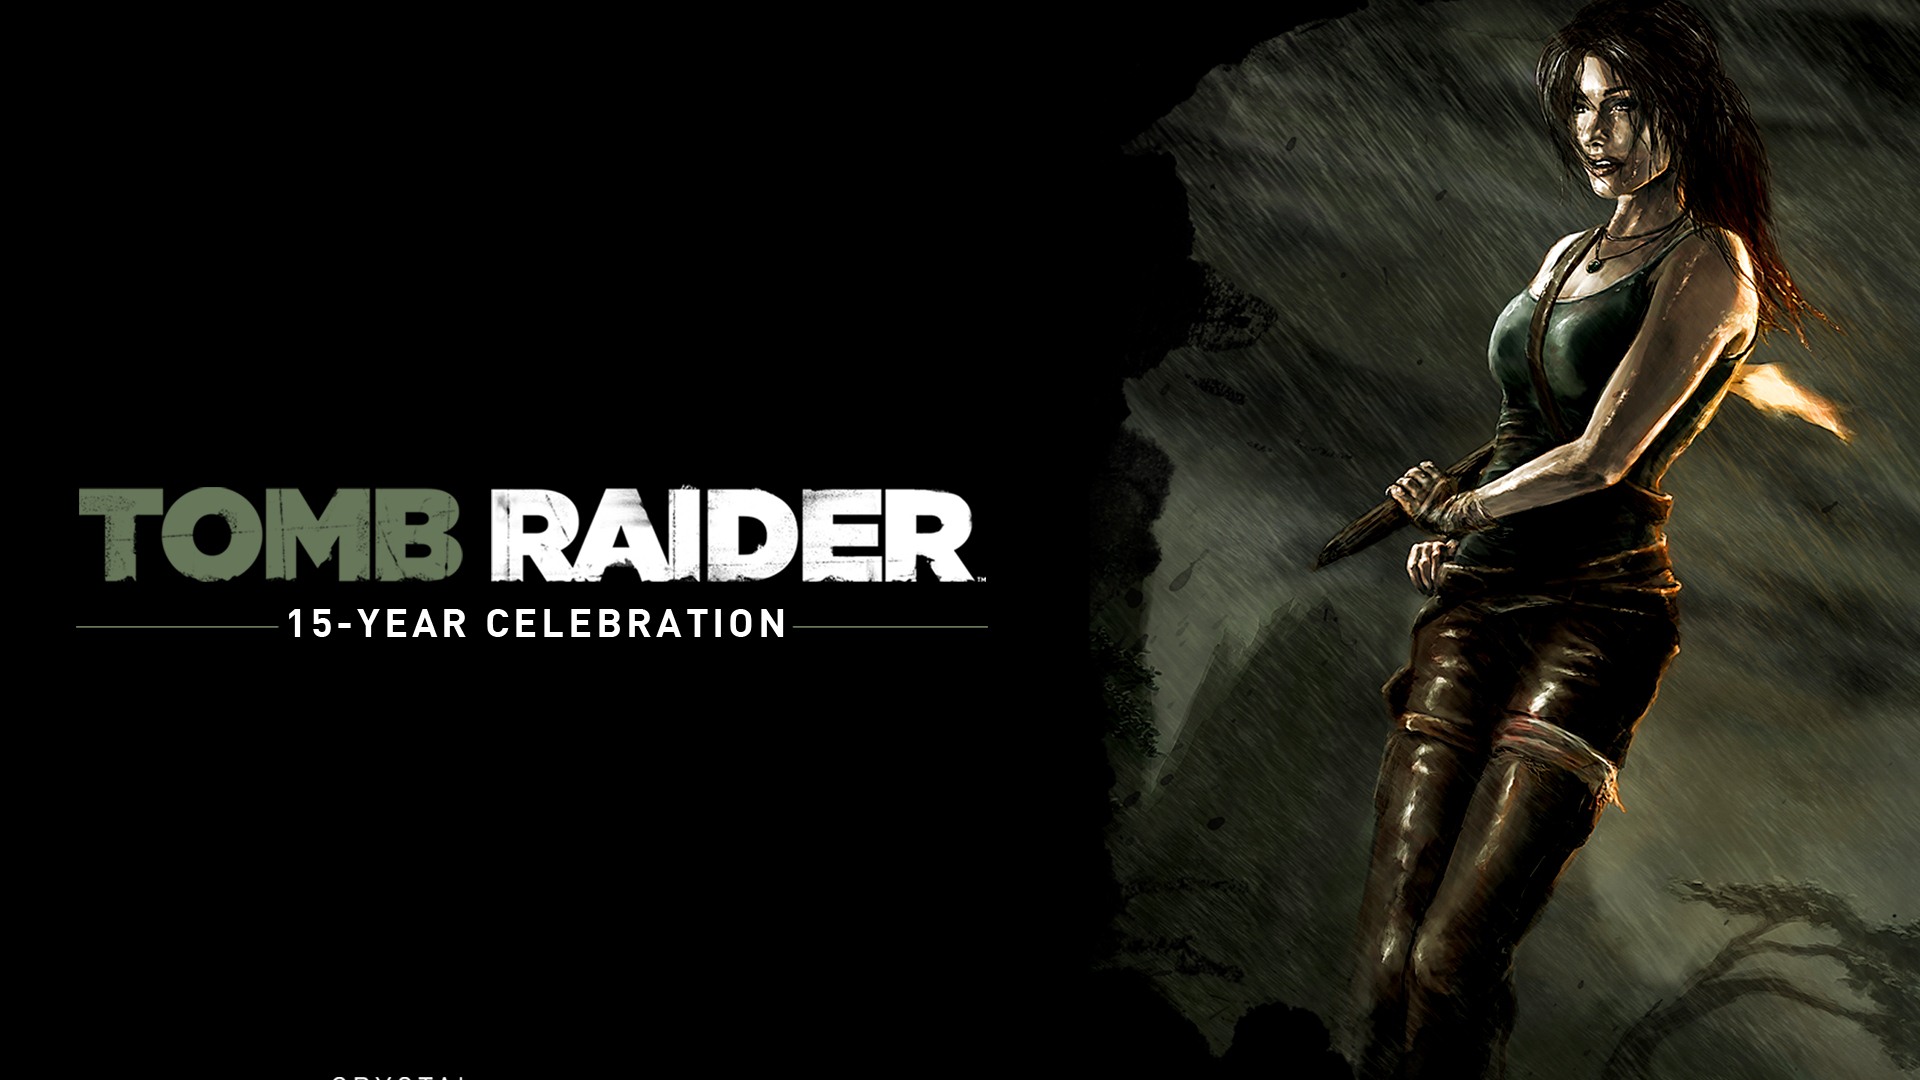 Tomb Raider 15-Year Celebration 古墓丽影15周年纪念版 高清壁纸2 - 1920x1080